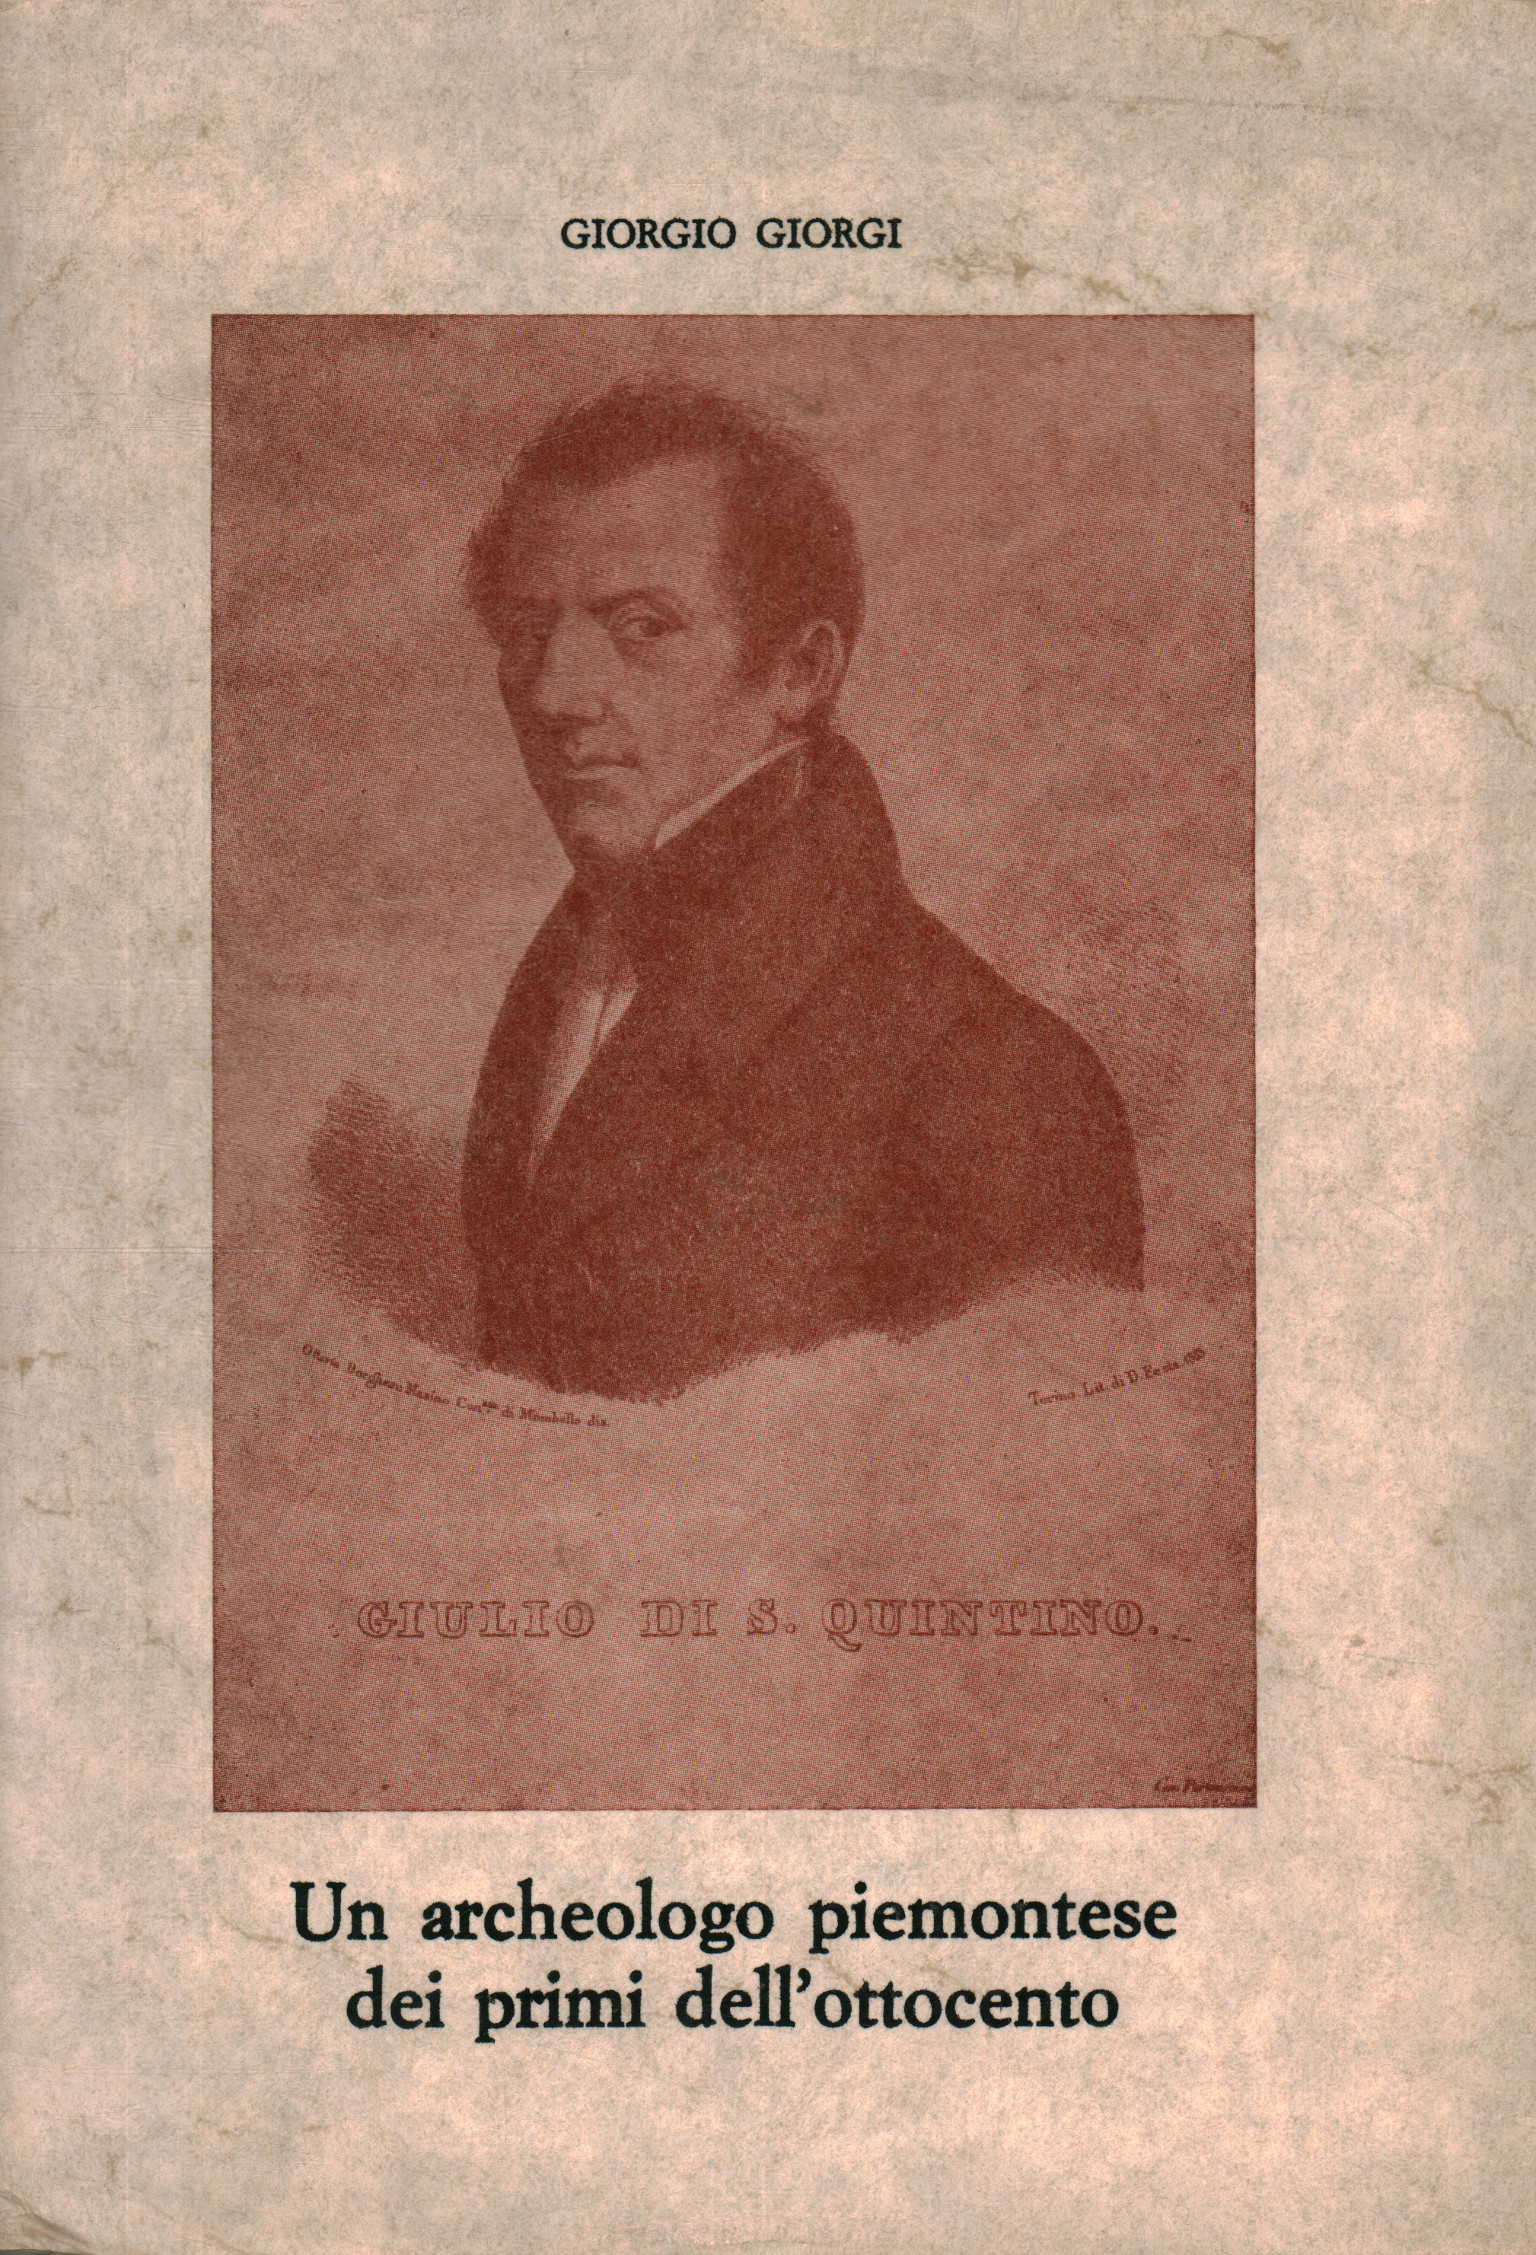 Un archéologue piémontais du début du XIXe siècle, Giorgio Giorgi